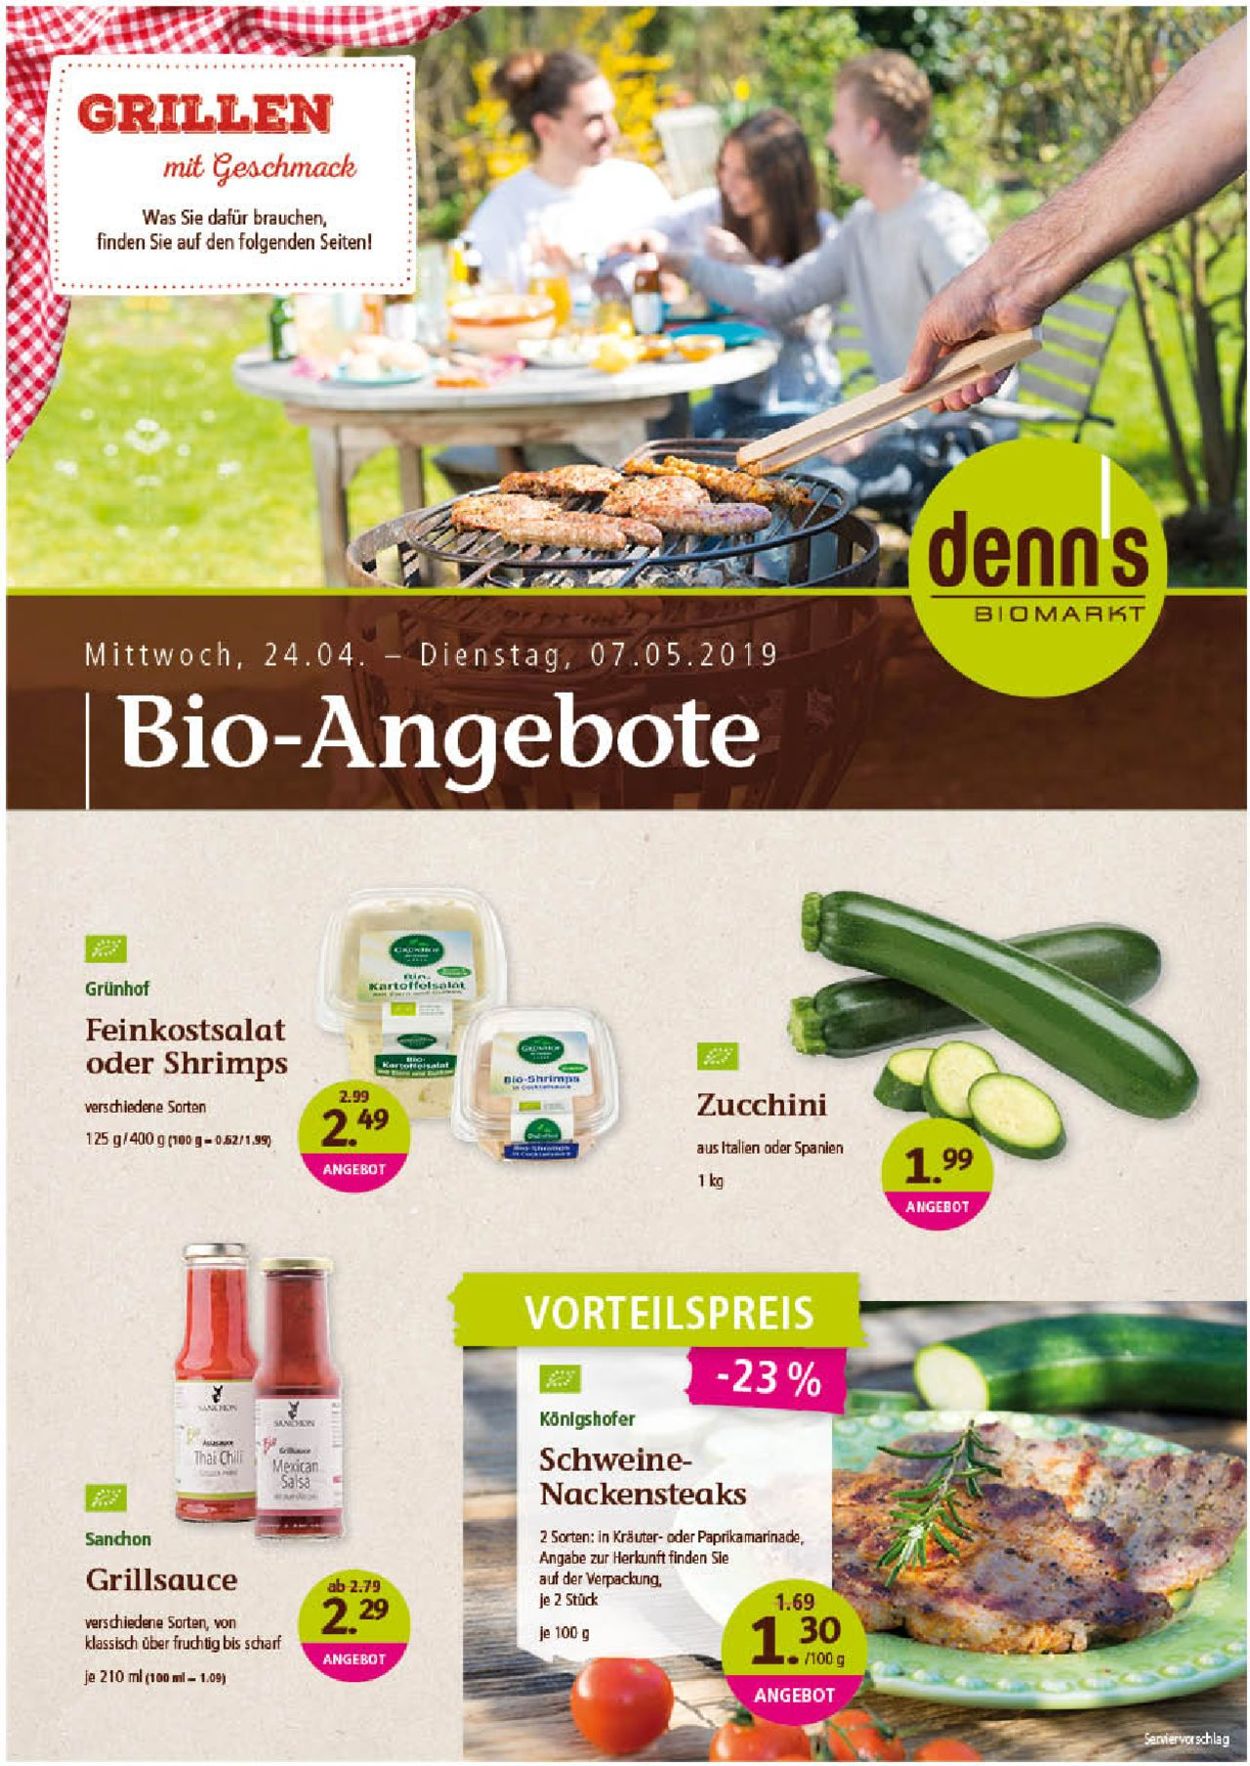 Denn's Biomarkt Prospekt ab 24.04.2019